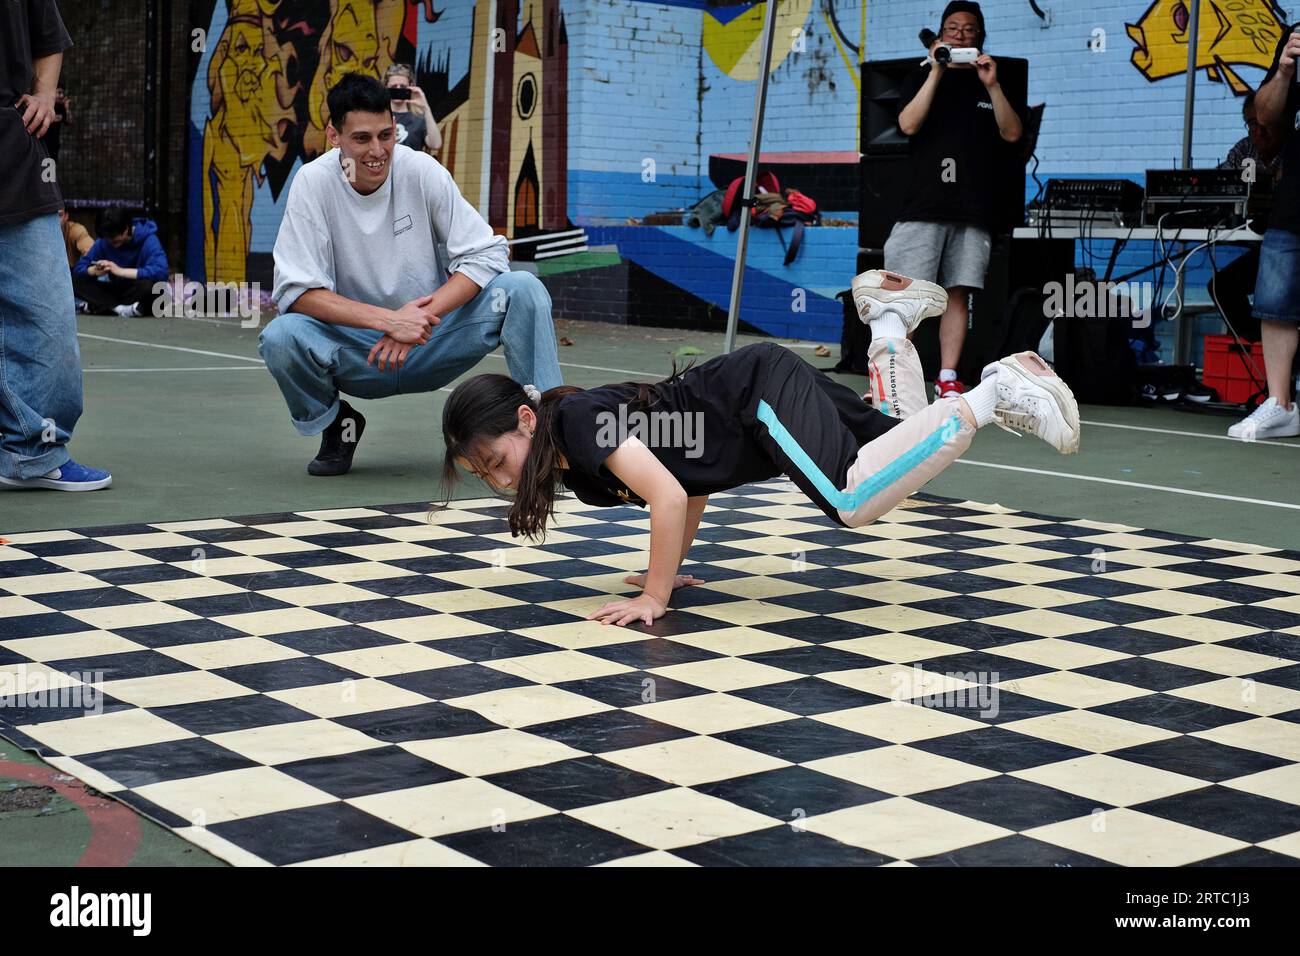 Una giovane ballerina Bgirl esegue una breakdance Freeze con performance e battaglie di competizione sui campi da basket di Woolloomooloo, Sydney Foto Stock